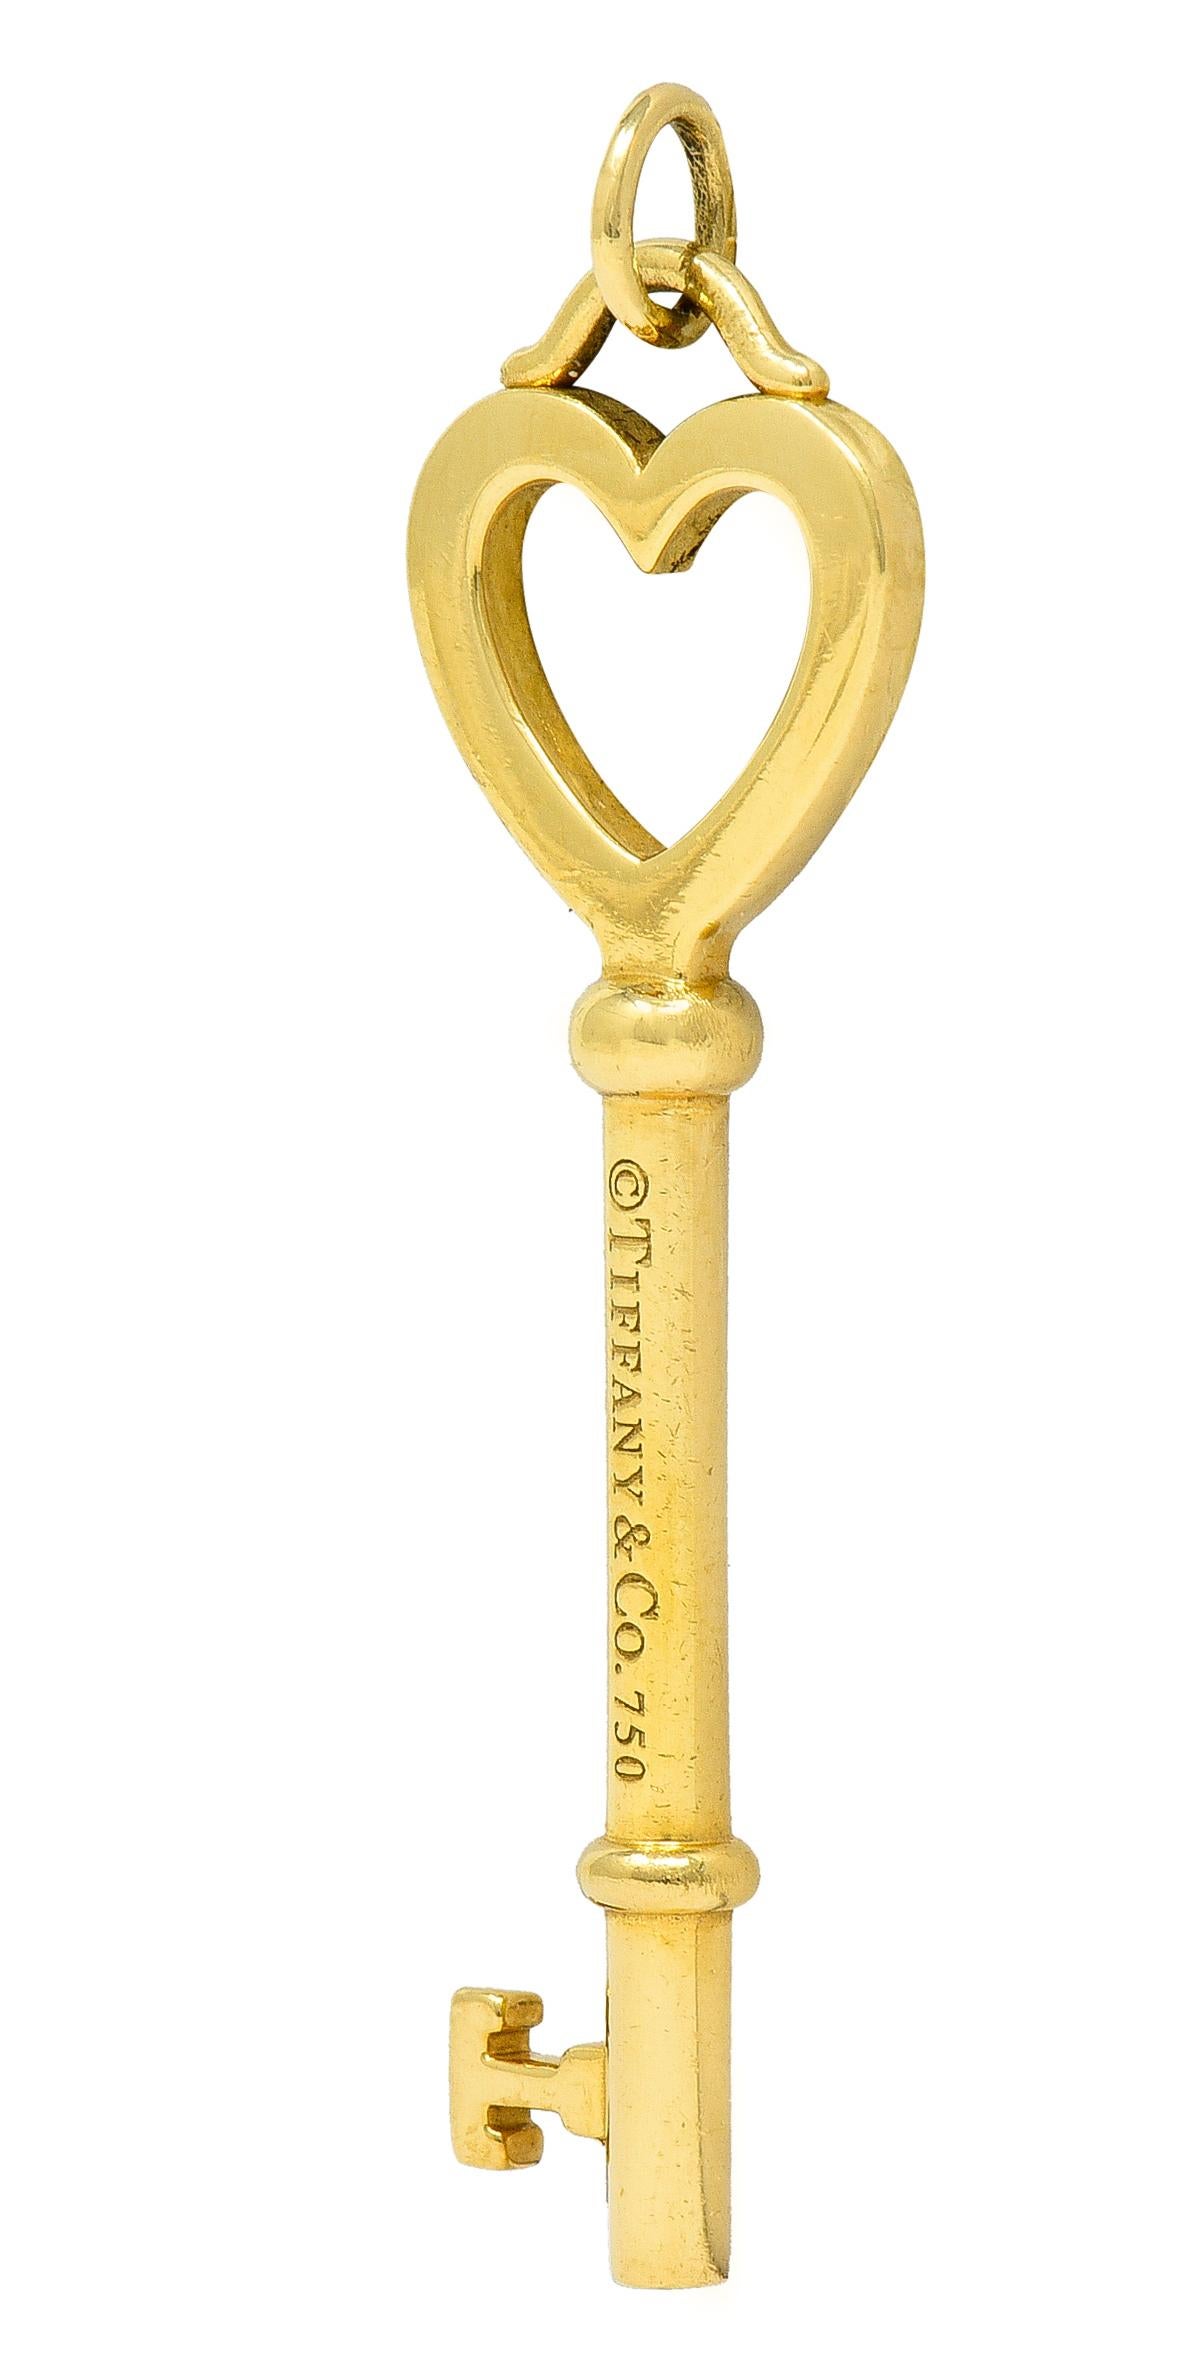 Contemporary Tiffany & Co. 18 Karat Yellow Gold Tiffany Heart Key Pendant